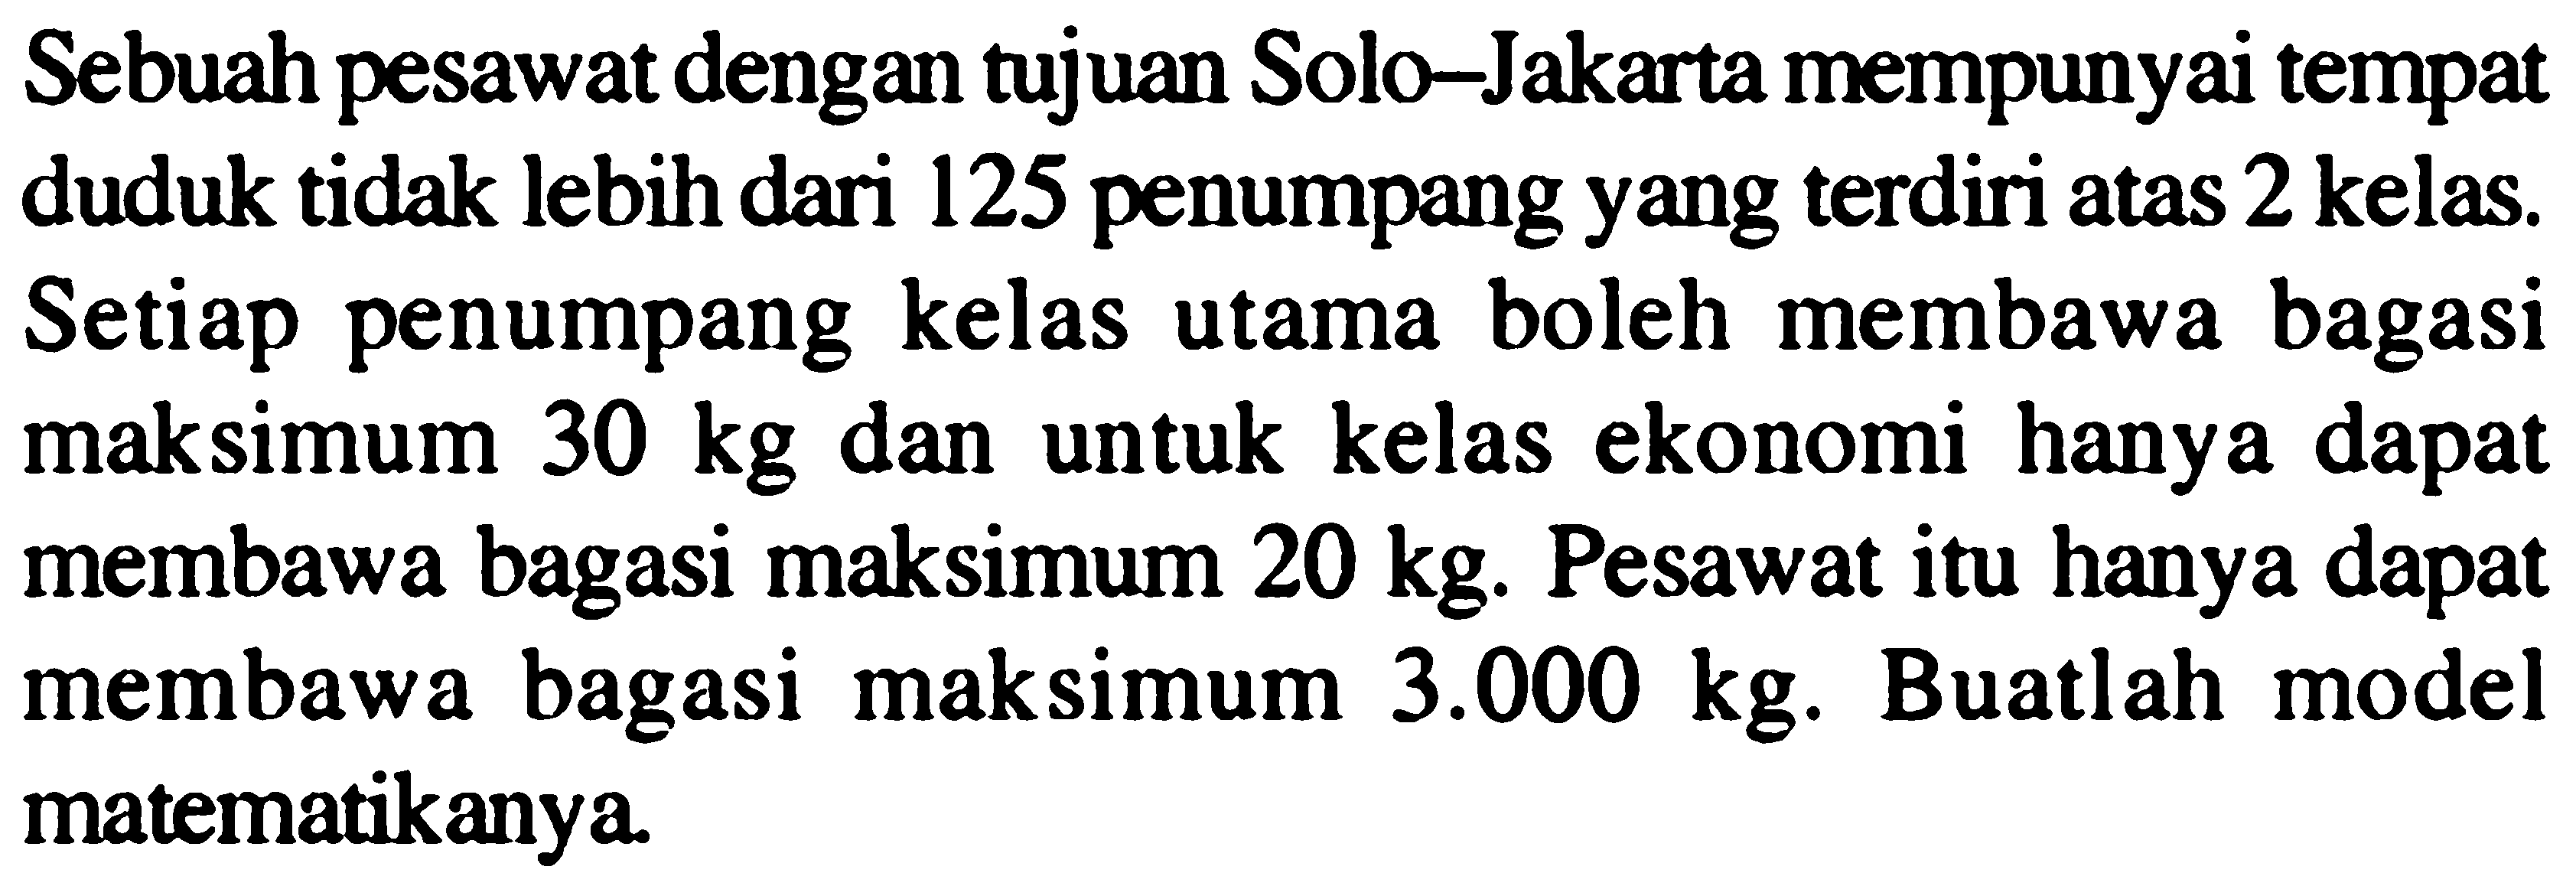 Sebuah pesawat dengan tujuan Solo-Jakarta mempunyai tempat duduk tidak lebih dari 125 penumpang yang terdiri atas 2 kelas. Setiap penumpang kelas utama boleh membawa bagasi maksimum 30 kg dan untuk kelas ekonomi hanya dapat membawa bagasi maksimum 20 kg. Pesawat itu hanya dapat membawa bagasi maksimum 3.000 kg. Buatlah model matematikanya.